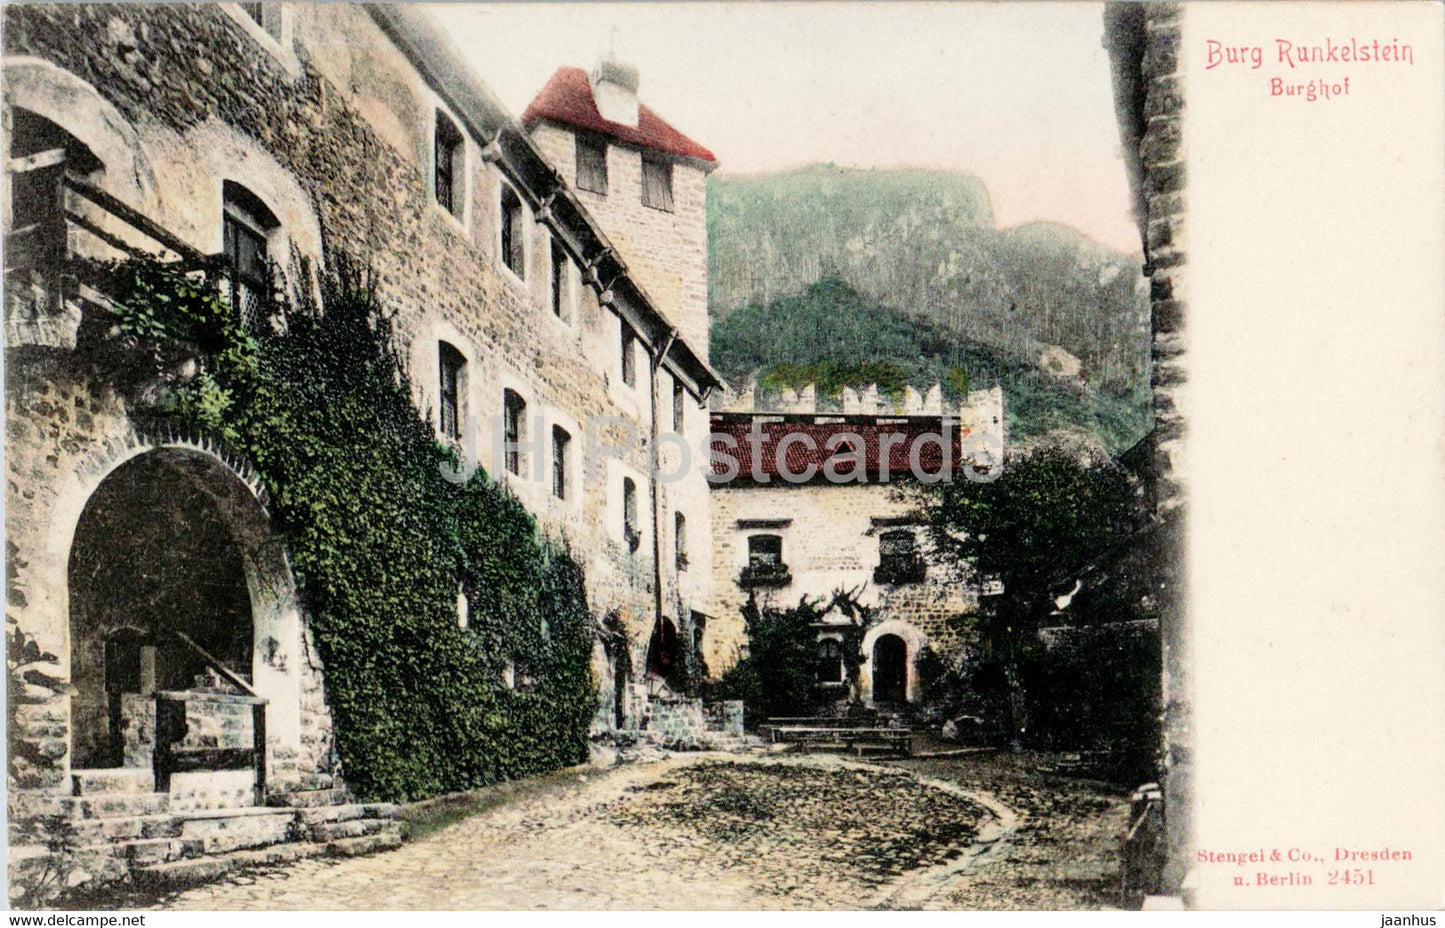 Burg Runkelstein - Burghof - castle - old postcard - Italy - unused - JH Postcards